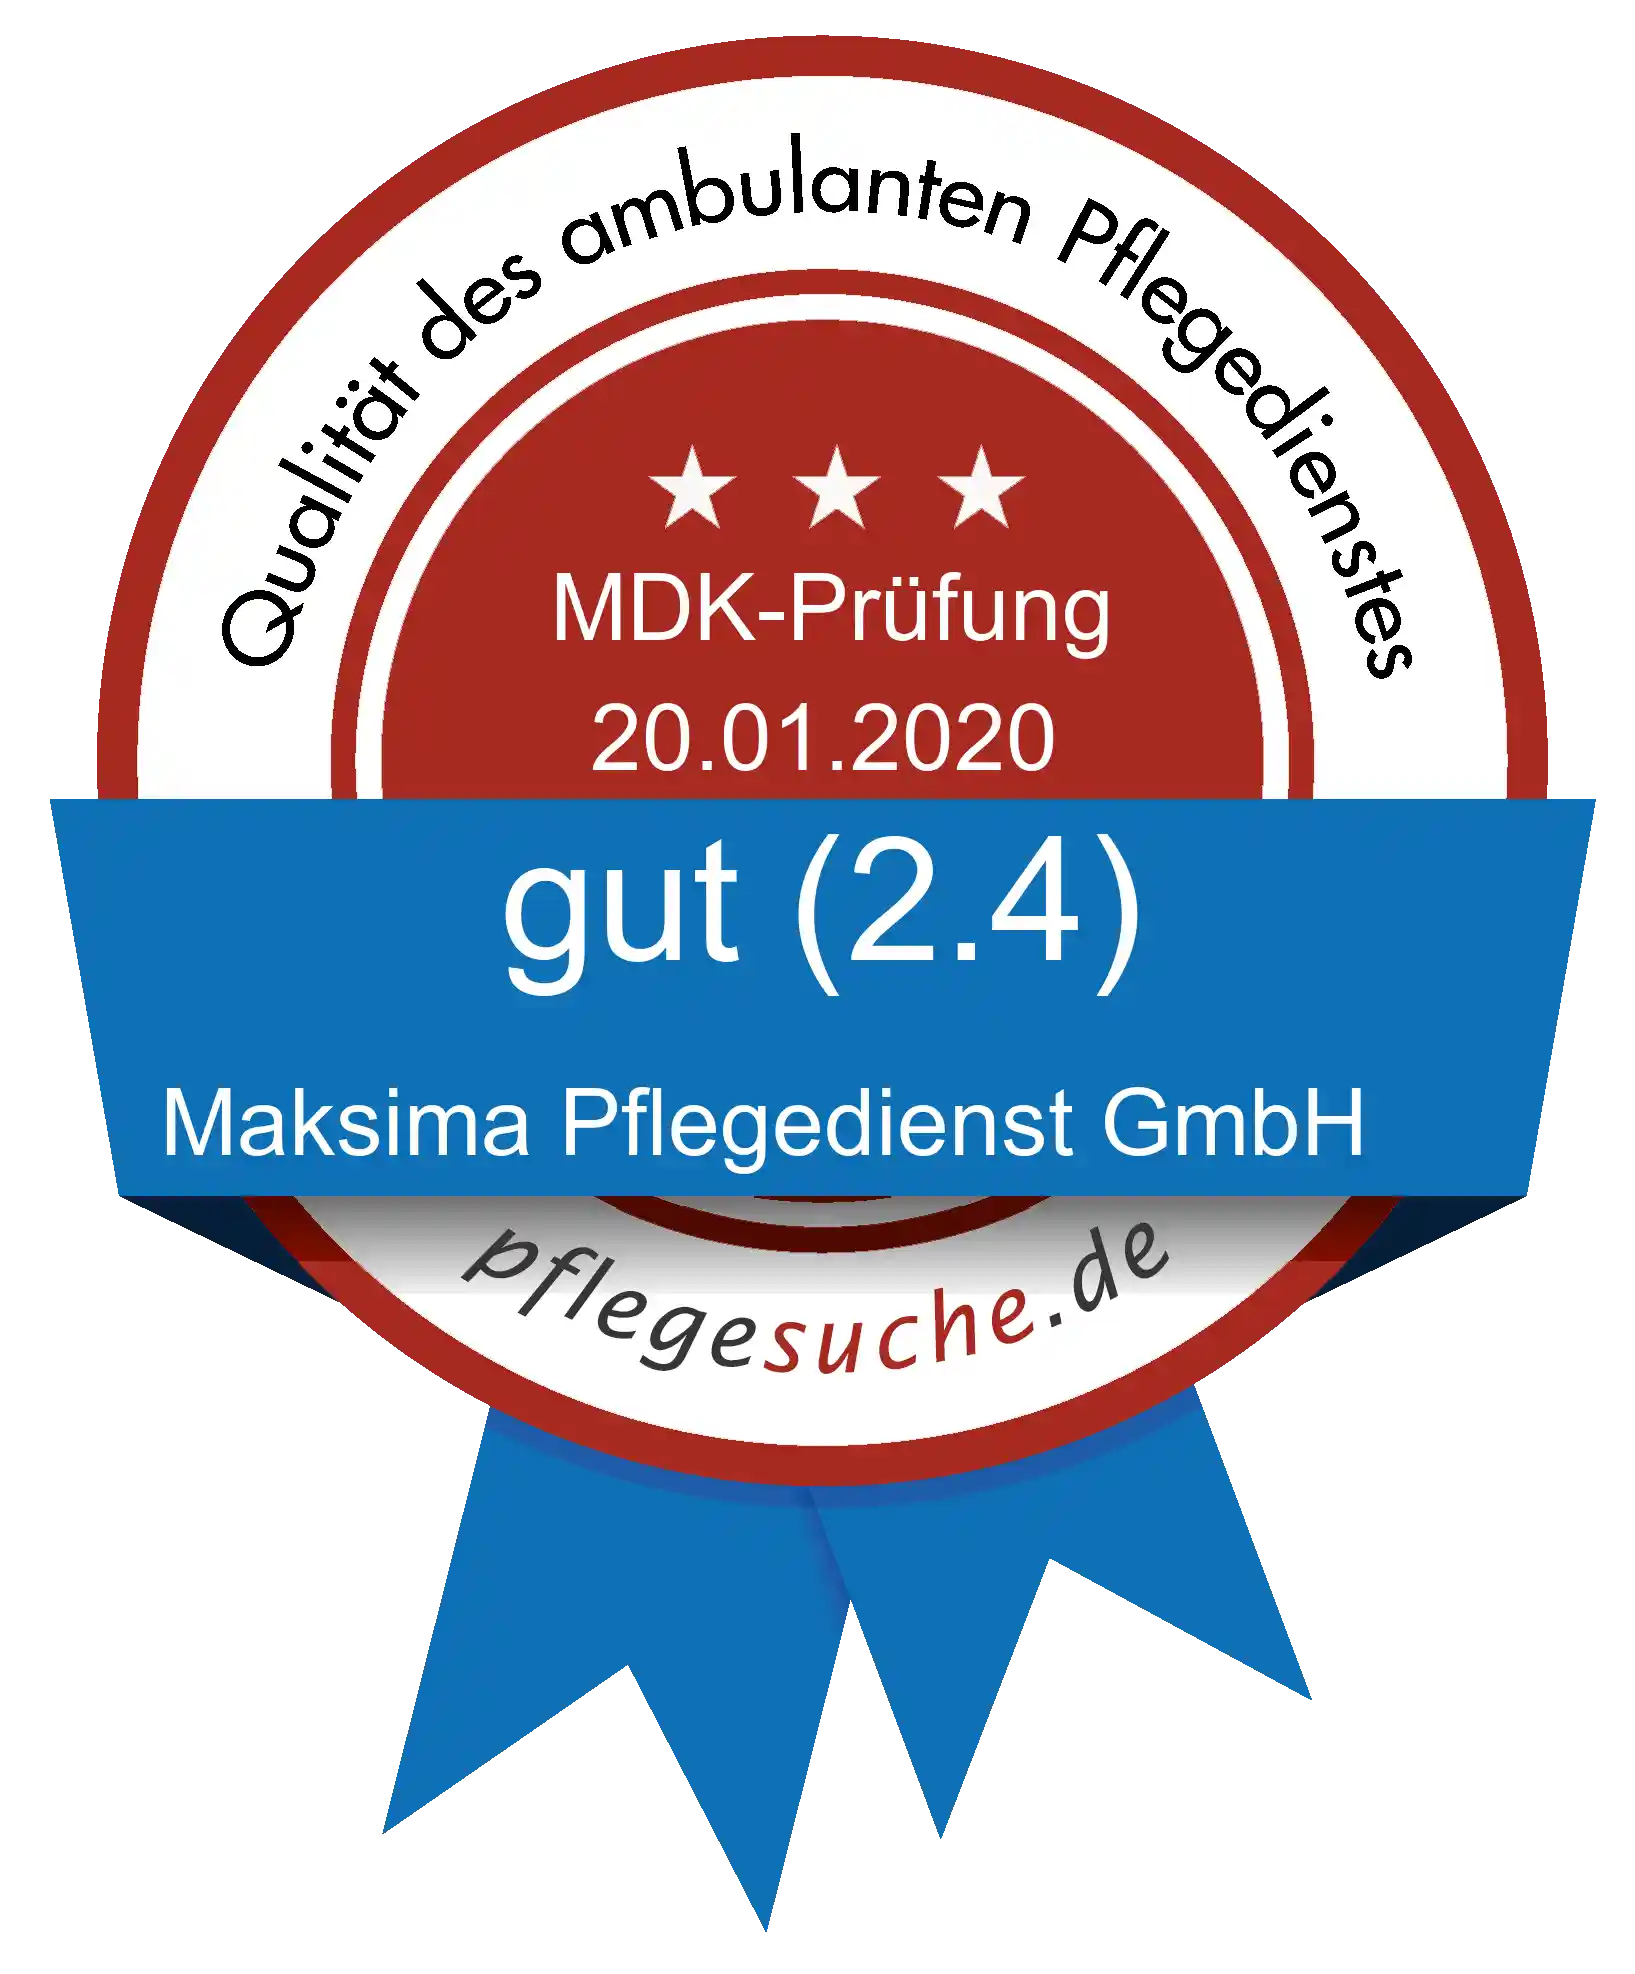 Siegel Benotung: Maksima Pflegedienst GmbH